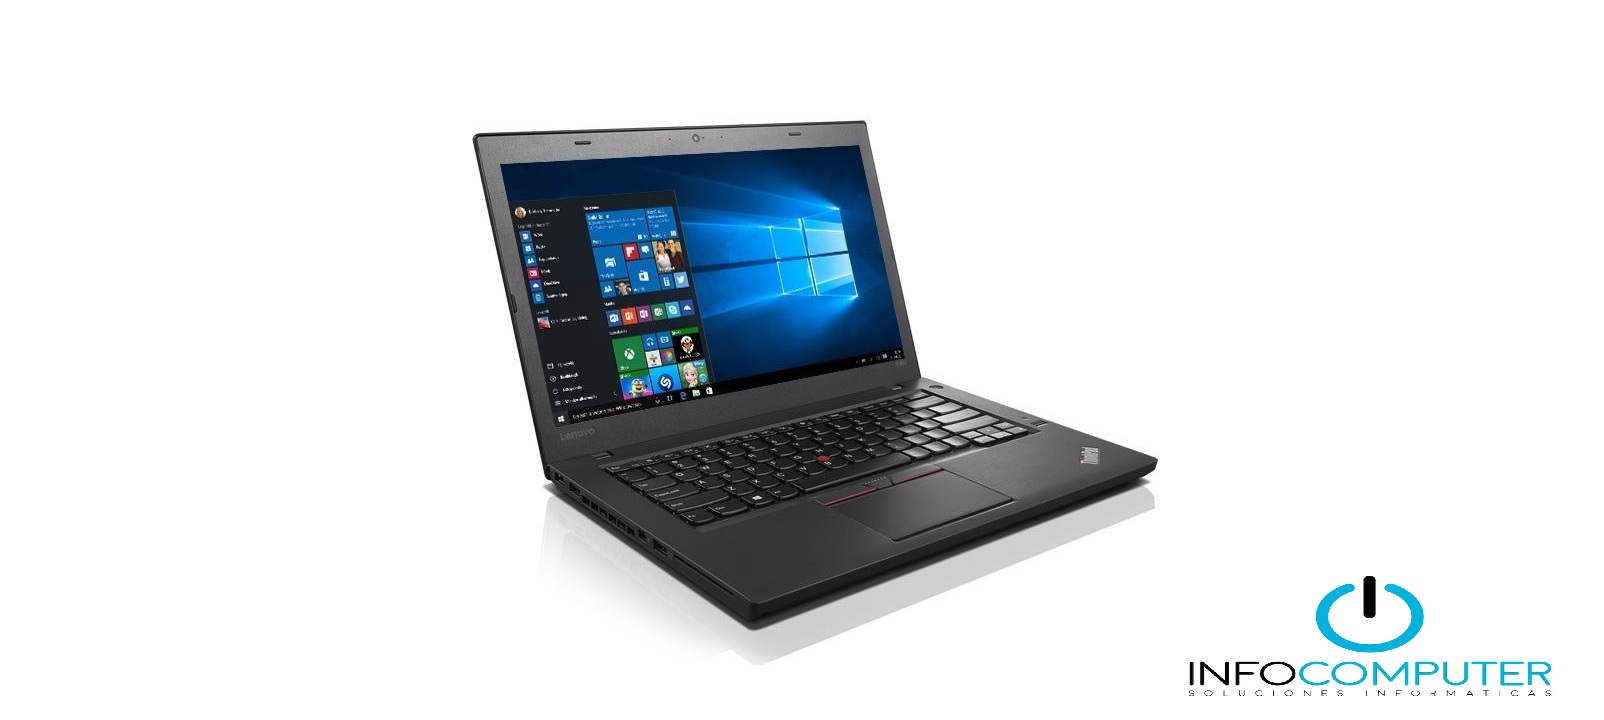 Analizamos el Lenovo ThinkPad T460: Portátil con excelente relación calidad  precio - Blog InfoComputer